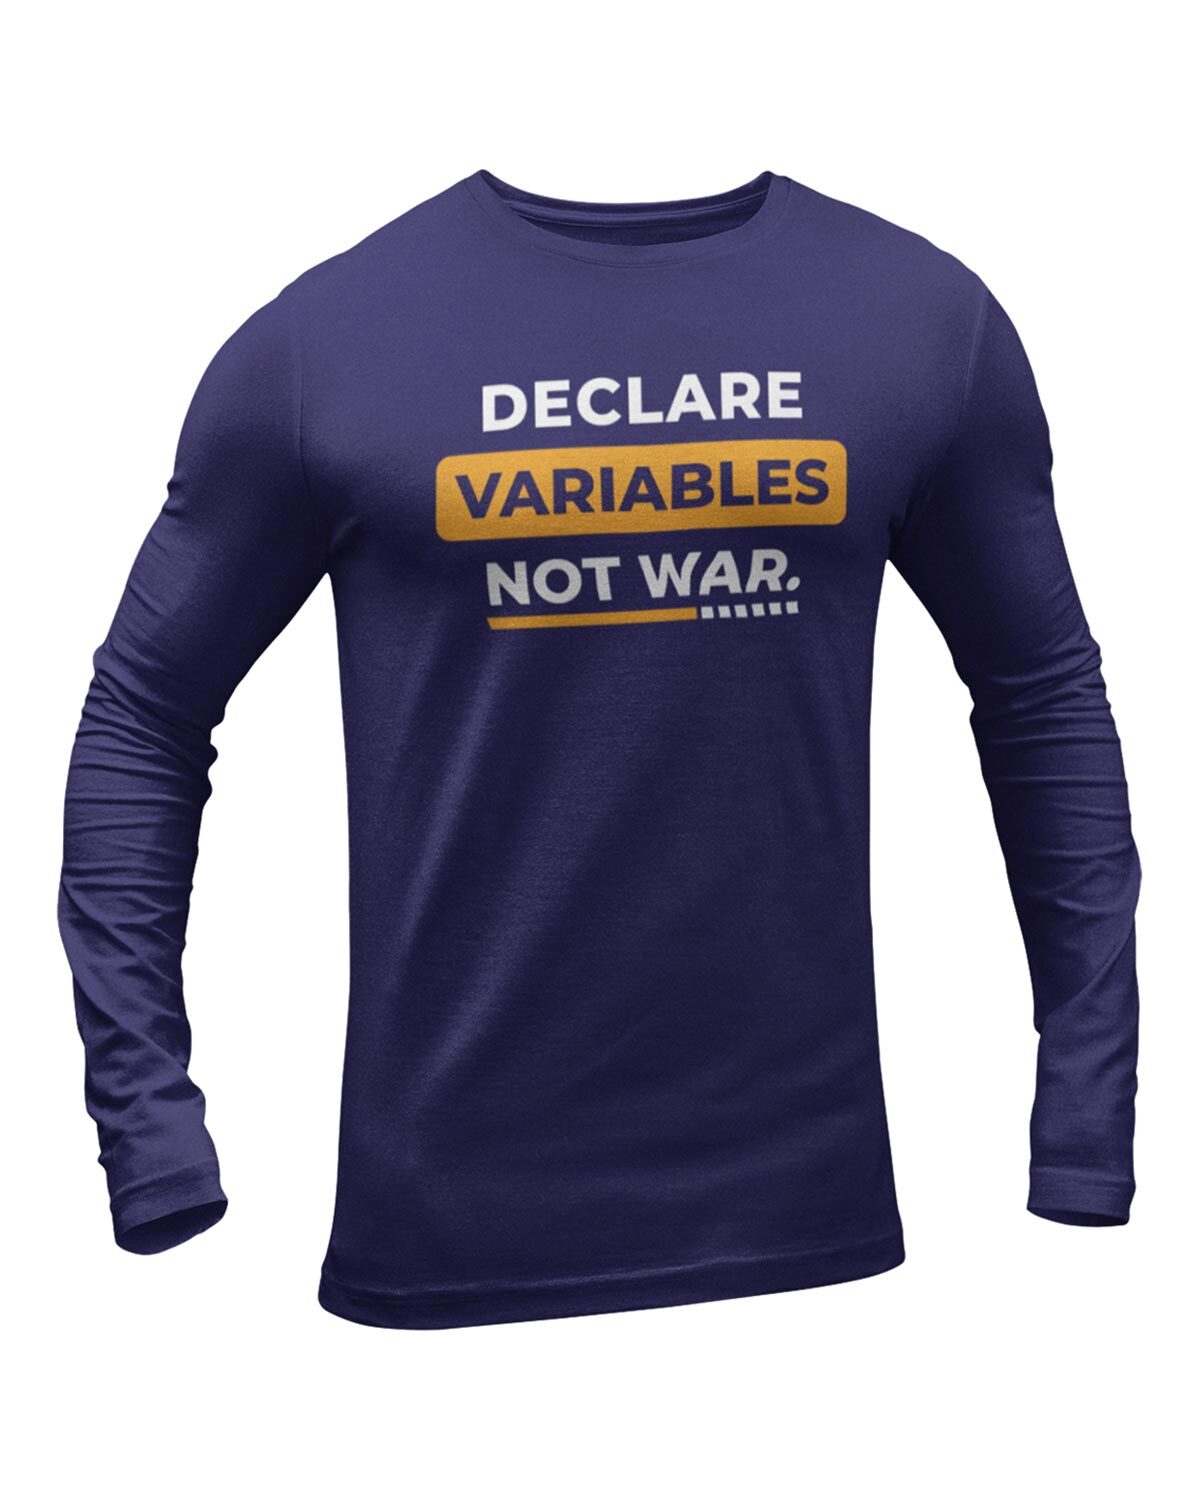 Declare Variables Not War Full Sleeve Geek T-Shirt - DudeMe